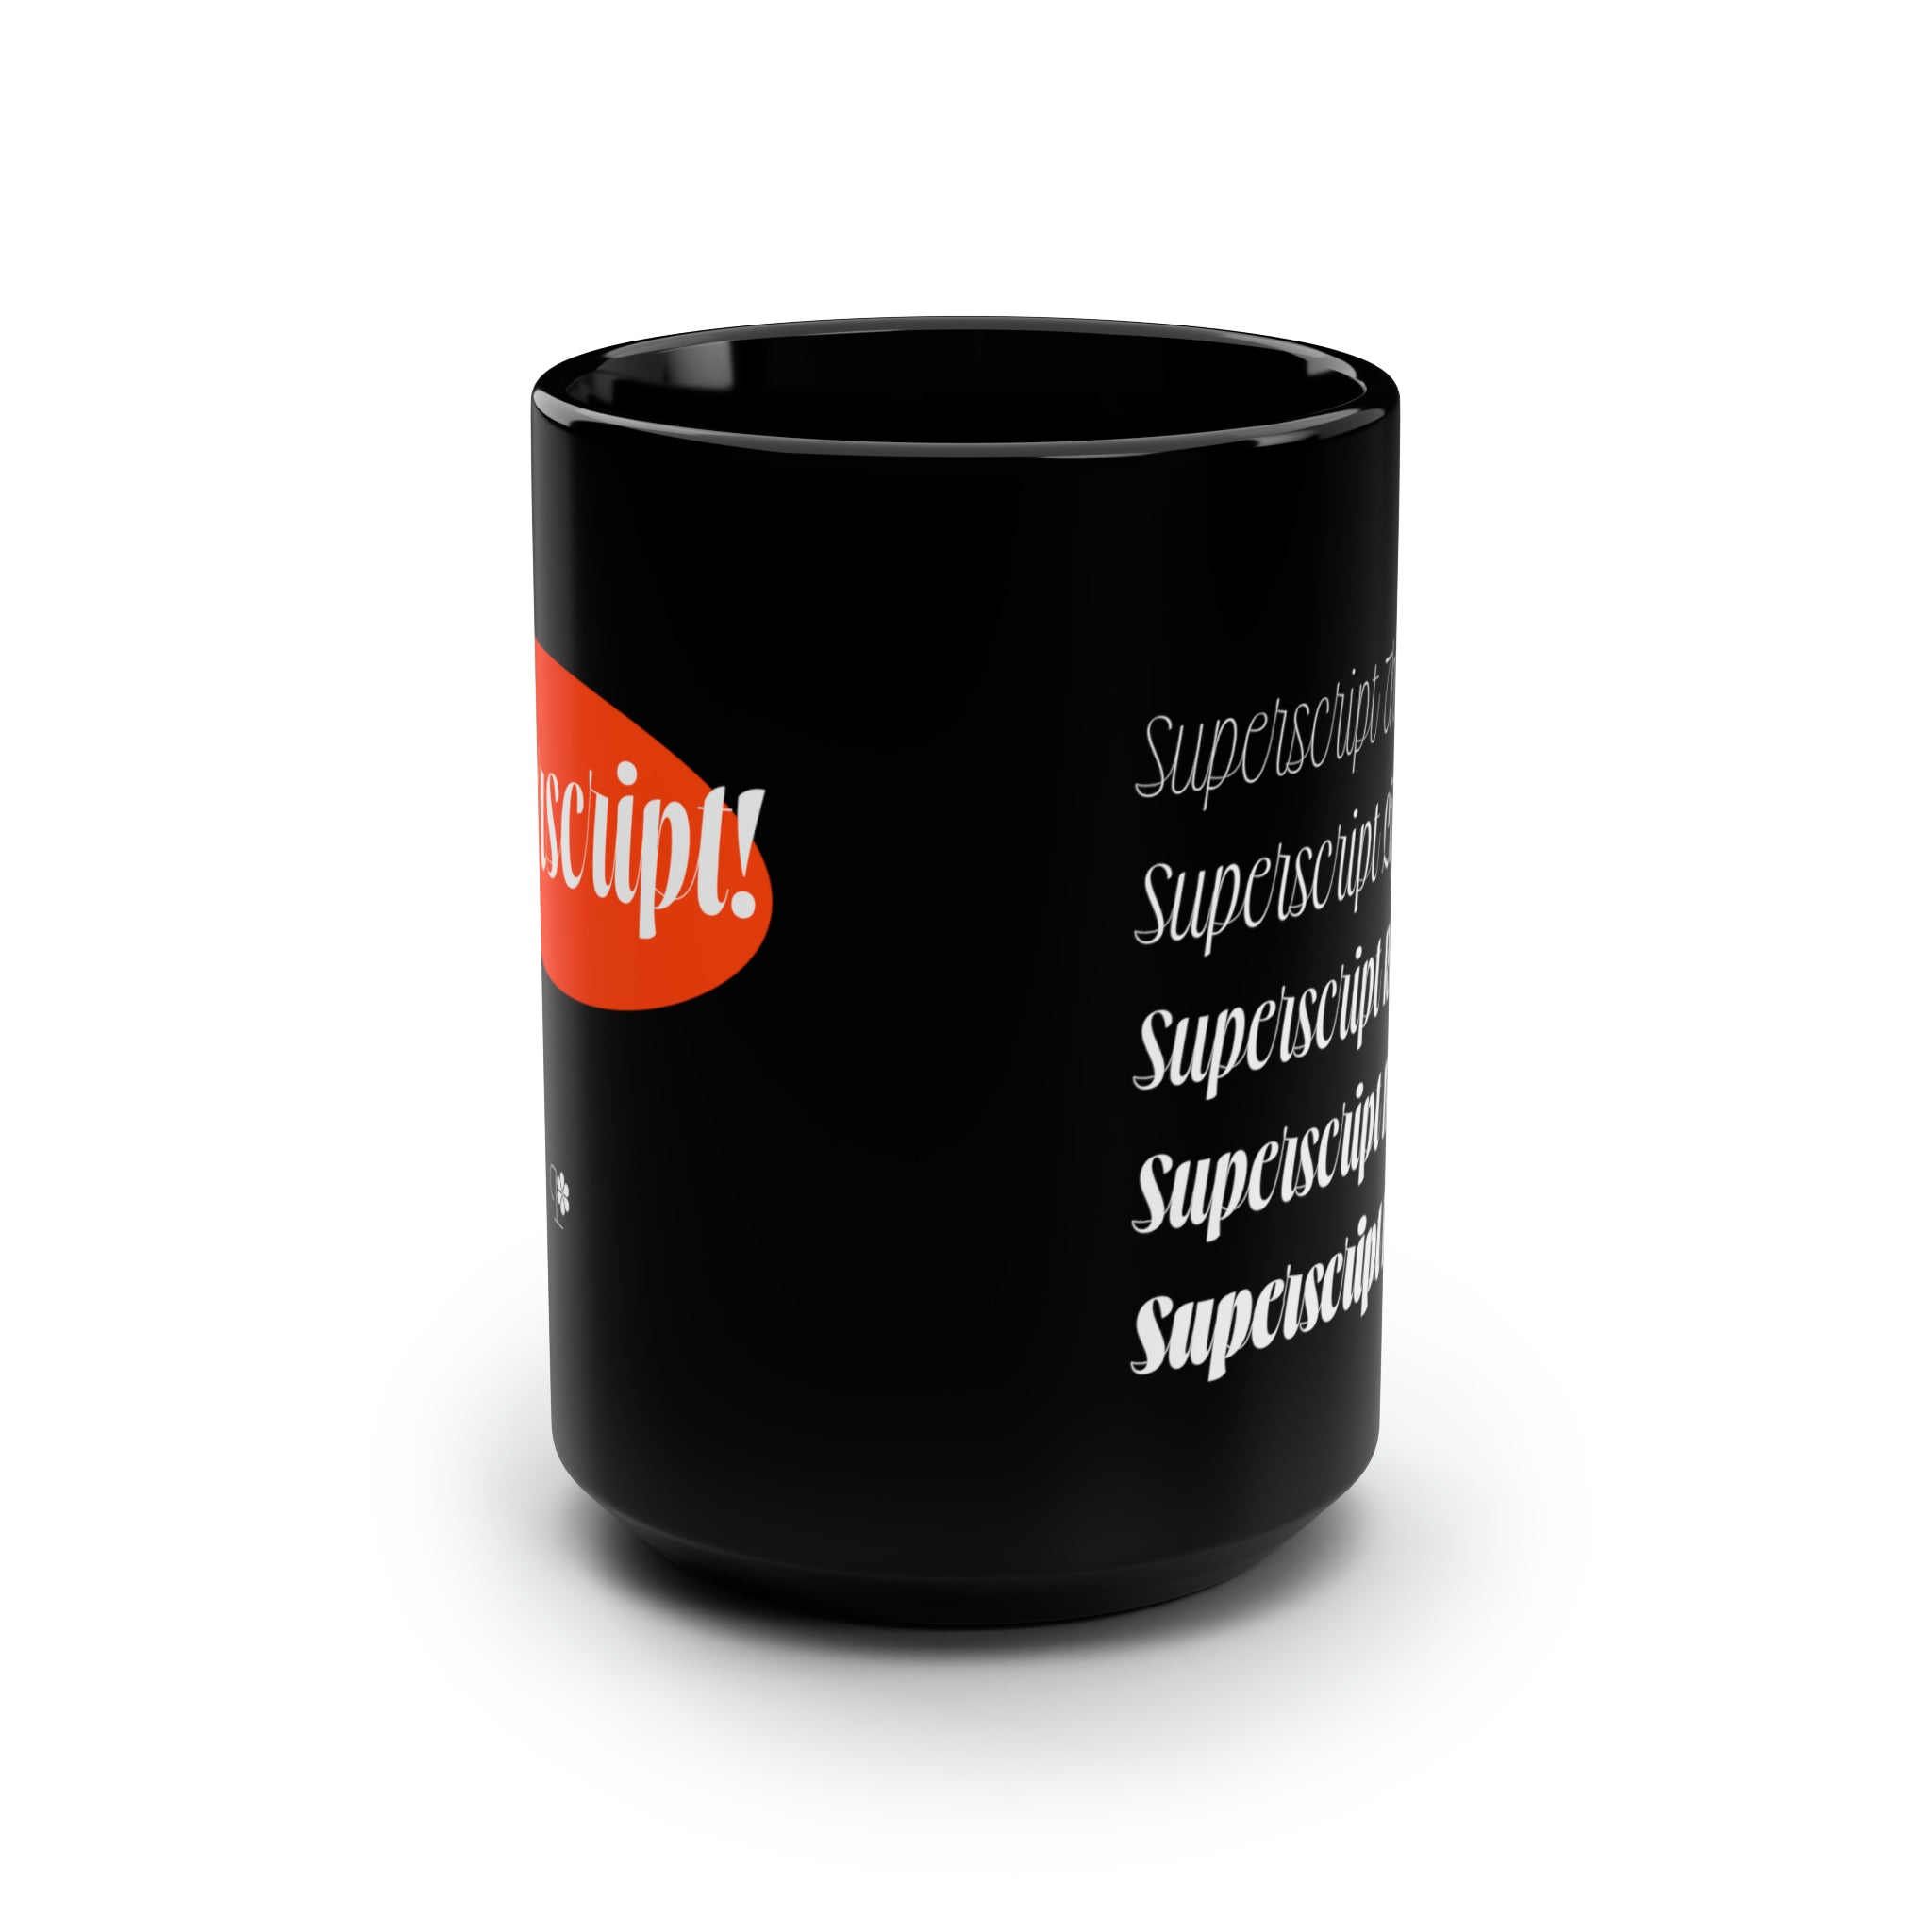 Superscript Mug, 15oz